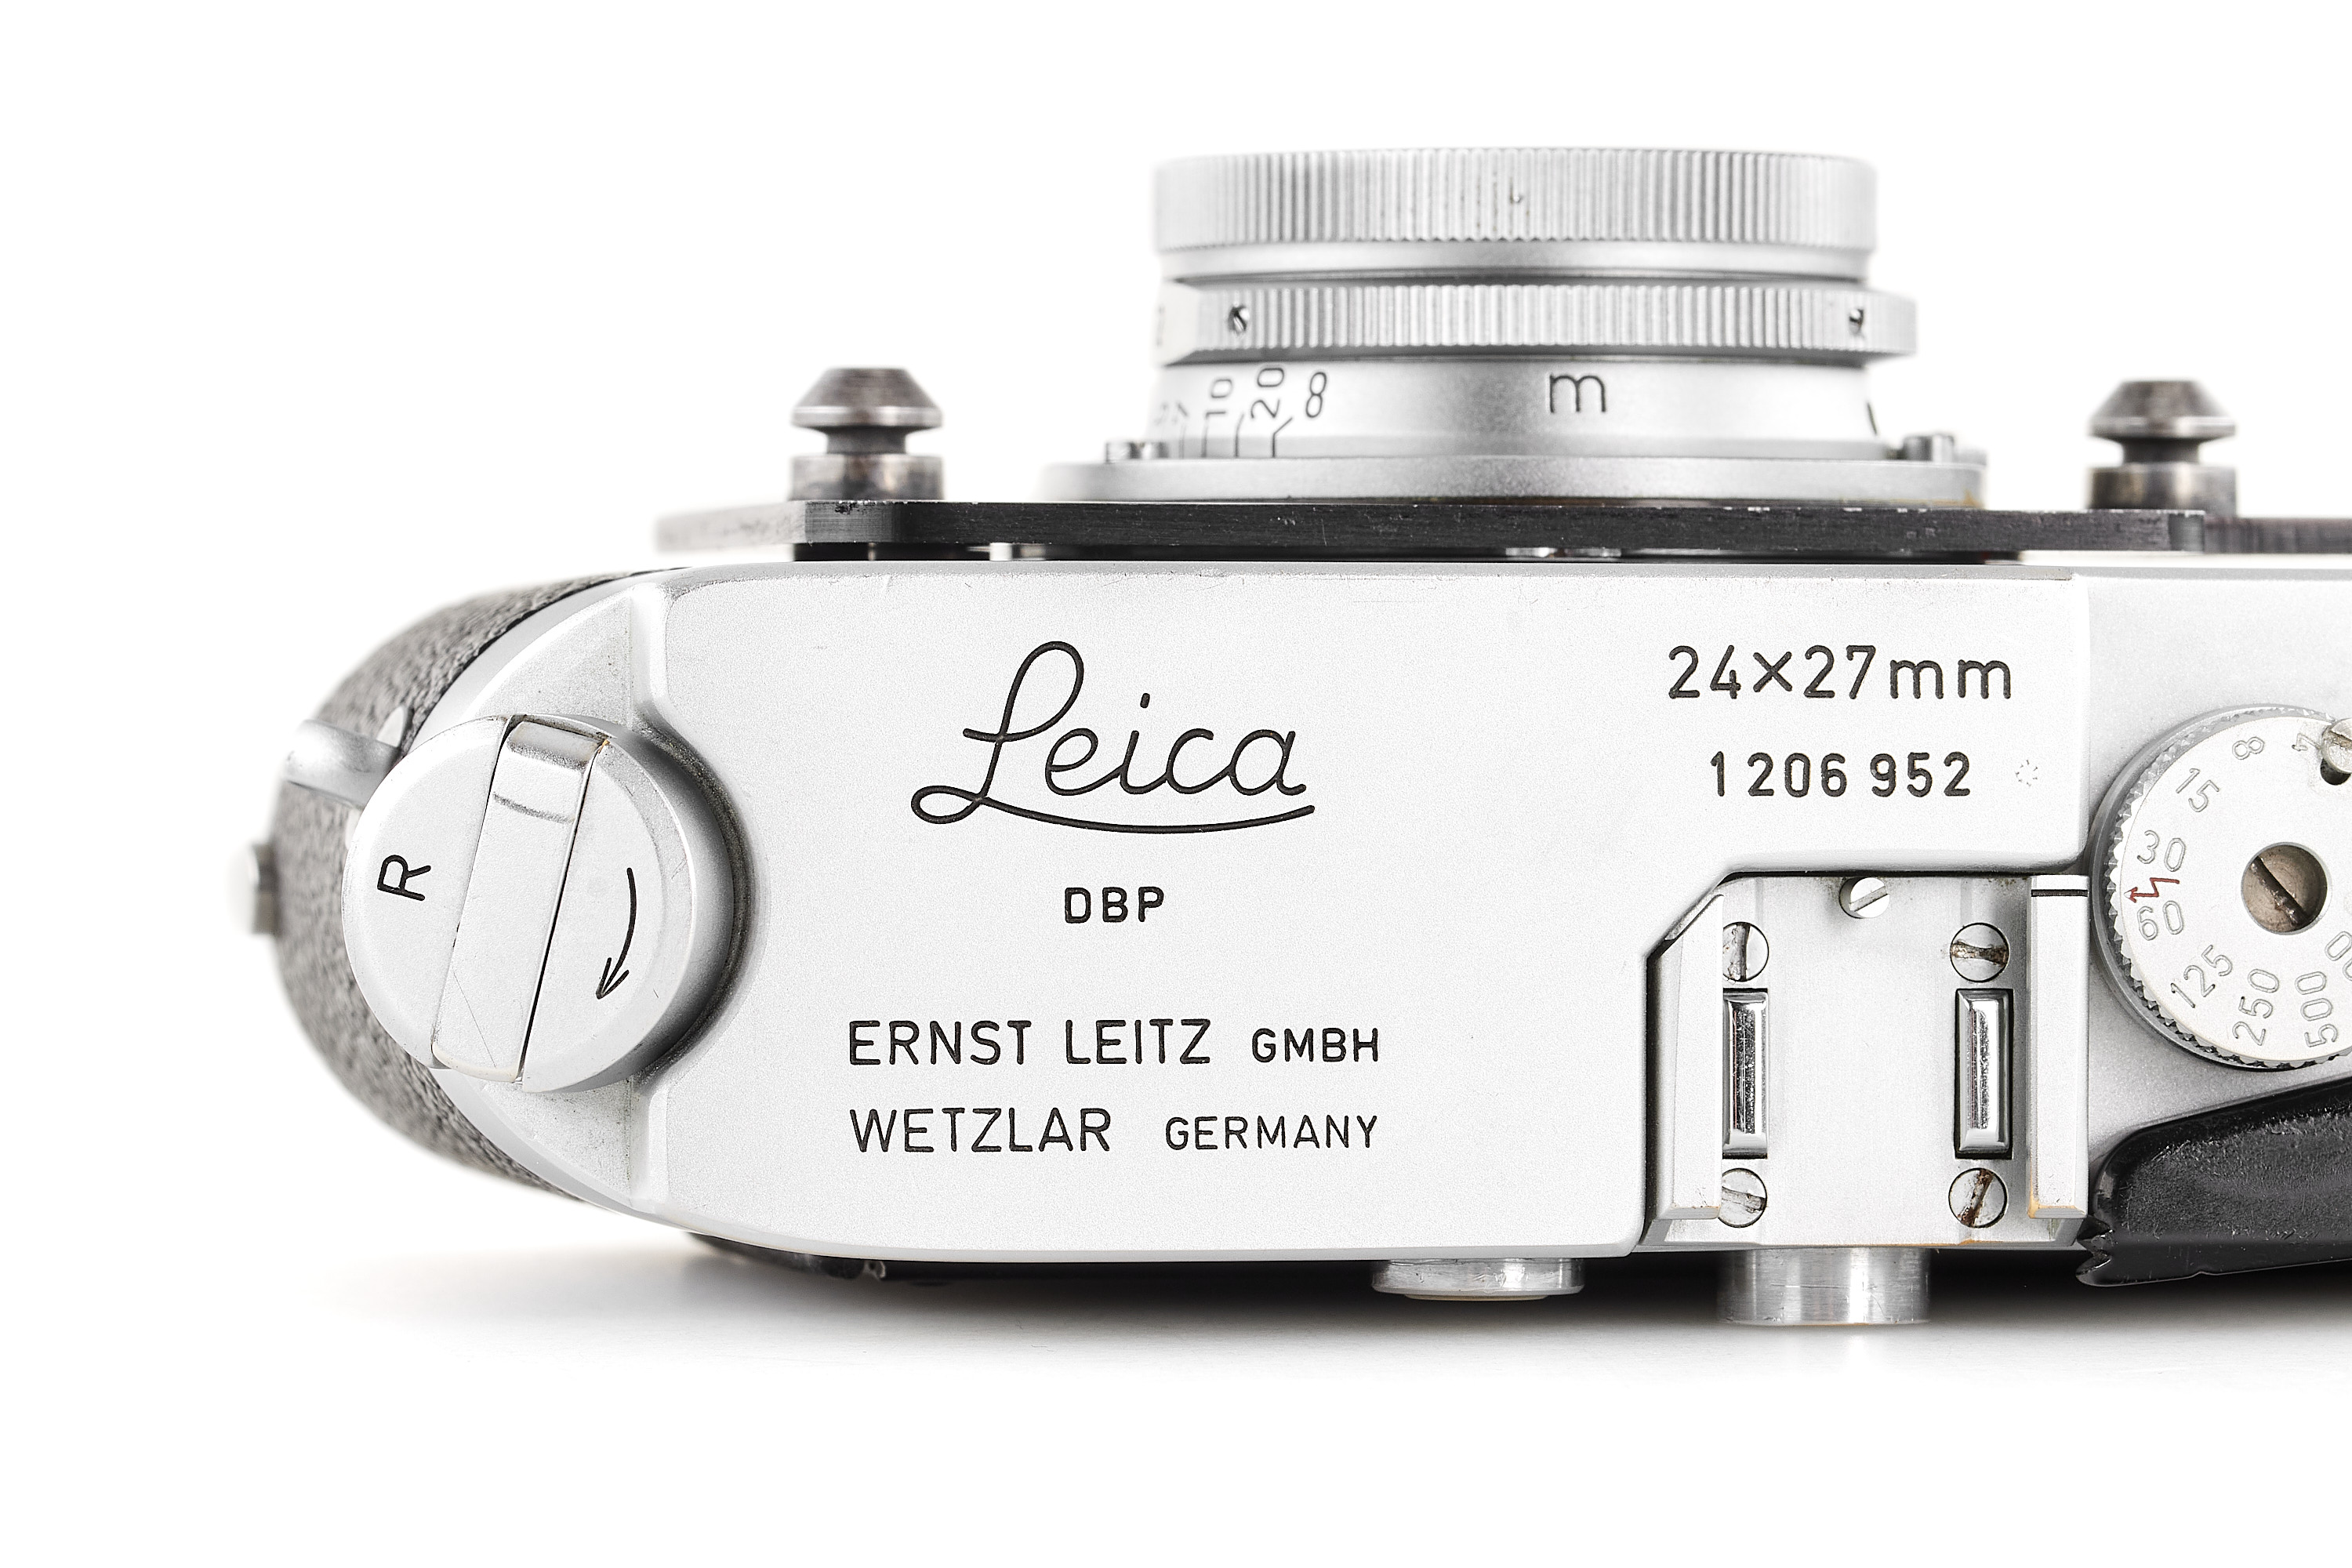 Leica MDa Post 24x27mm with Summaron 5.6/2.8cm | A00654